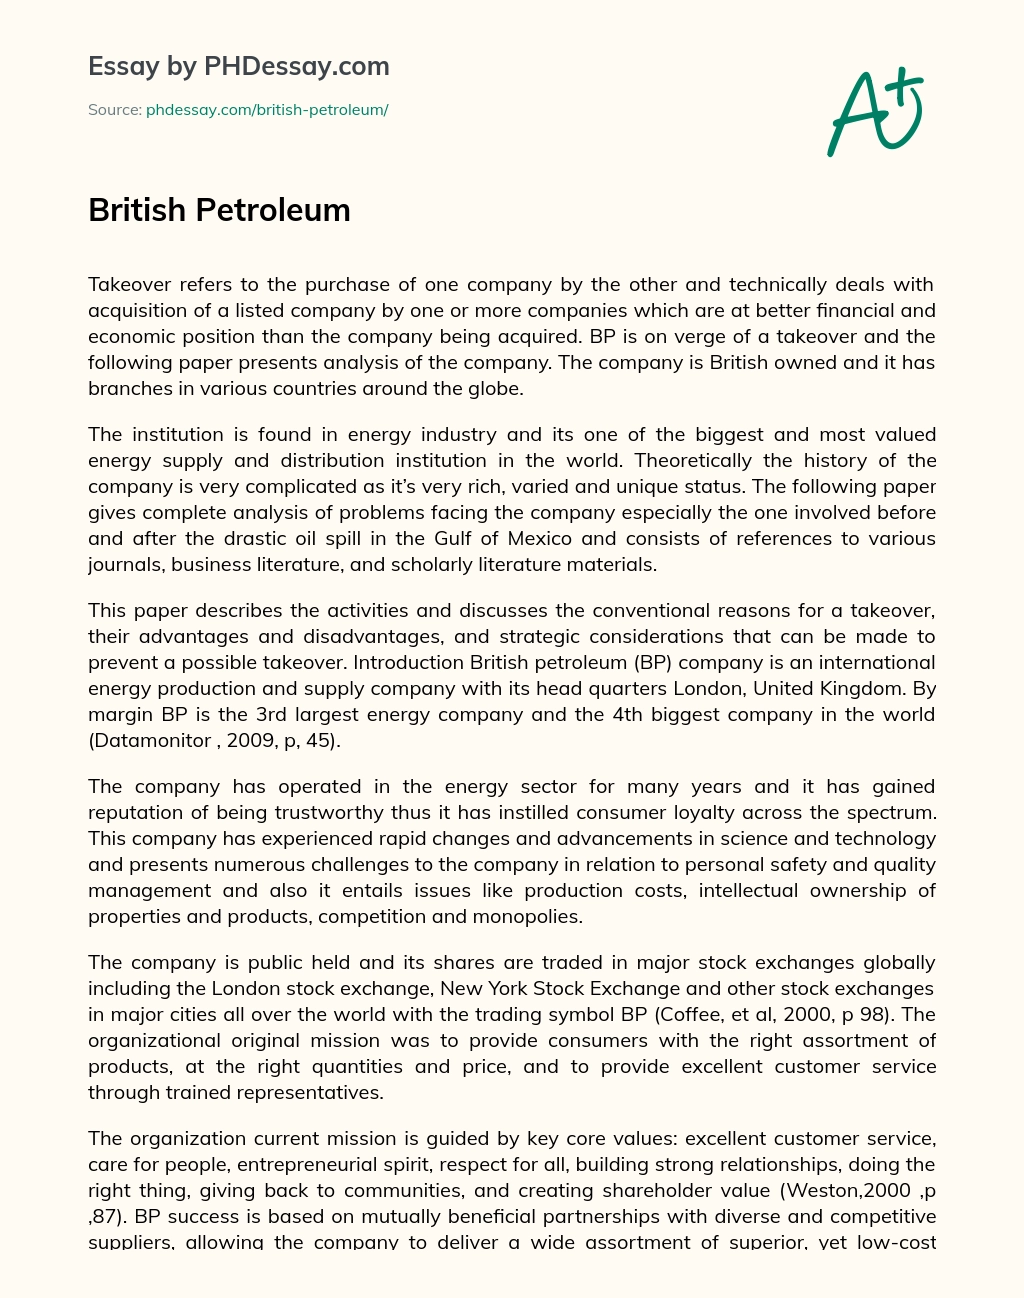 British Petroleum essay